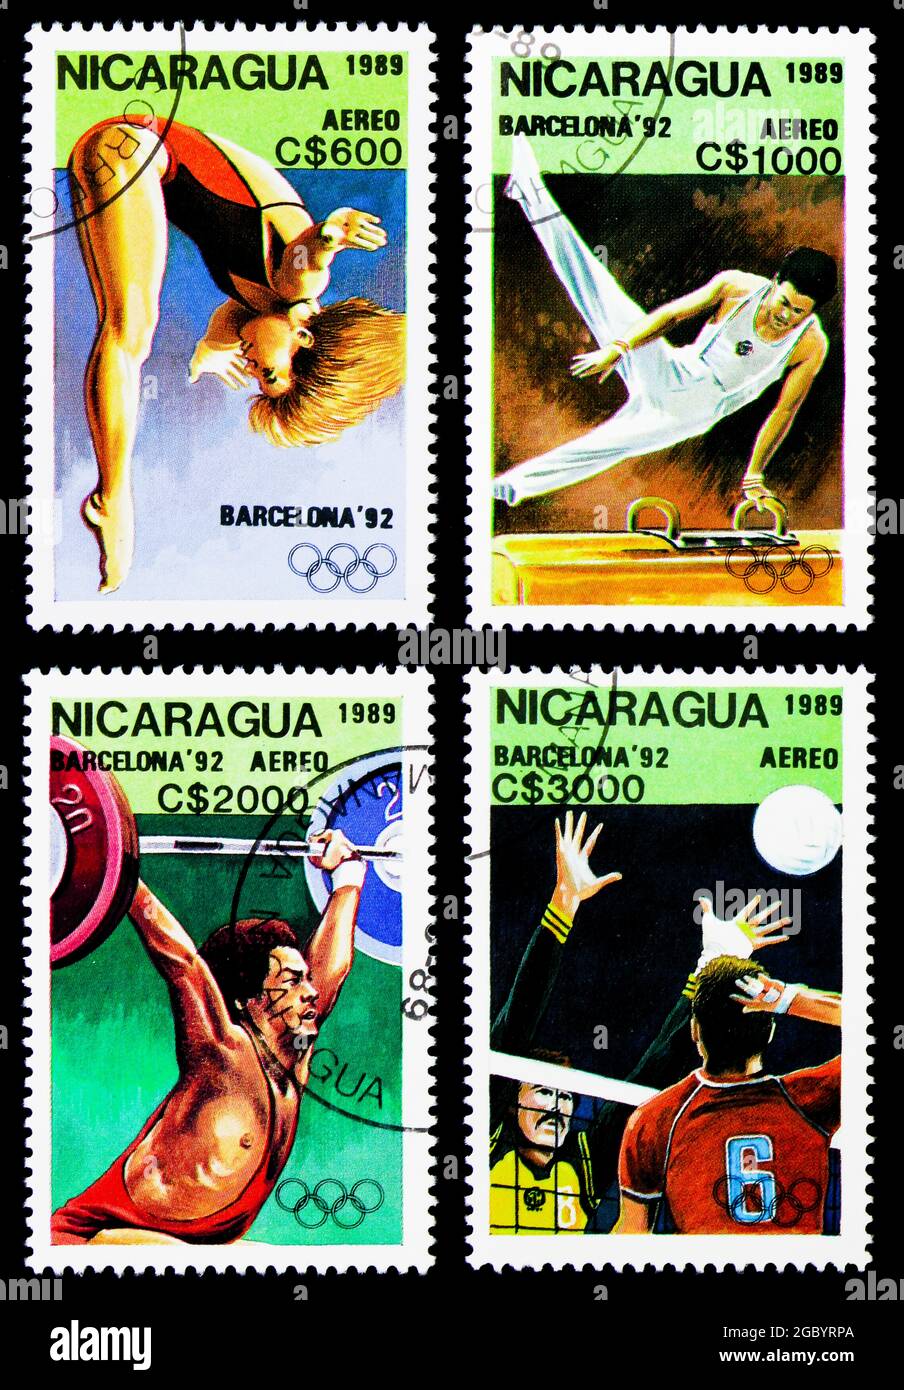 MOSKAU, RUSSLAND - 26. NOVEMBER 2017: Vier Briefmarken gedruckt in Nicaragua von den Olympischen Spielen 1992 - Serie Barcelona, um 1989 Stockfoto